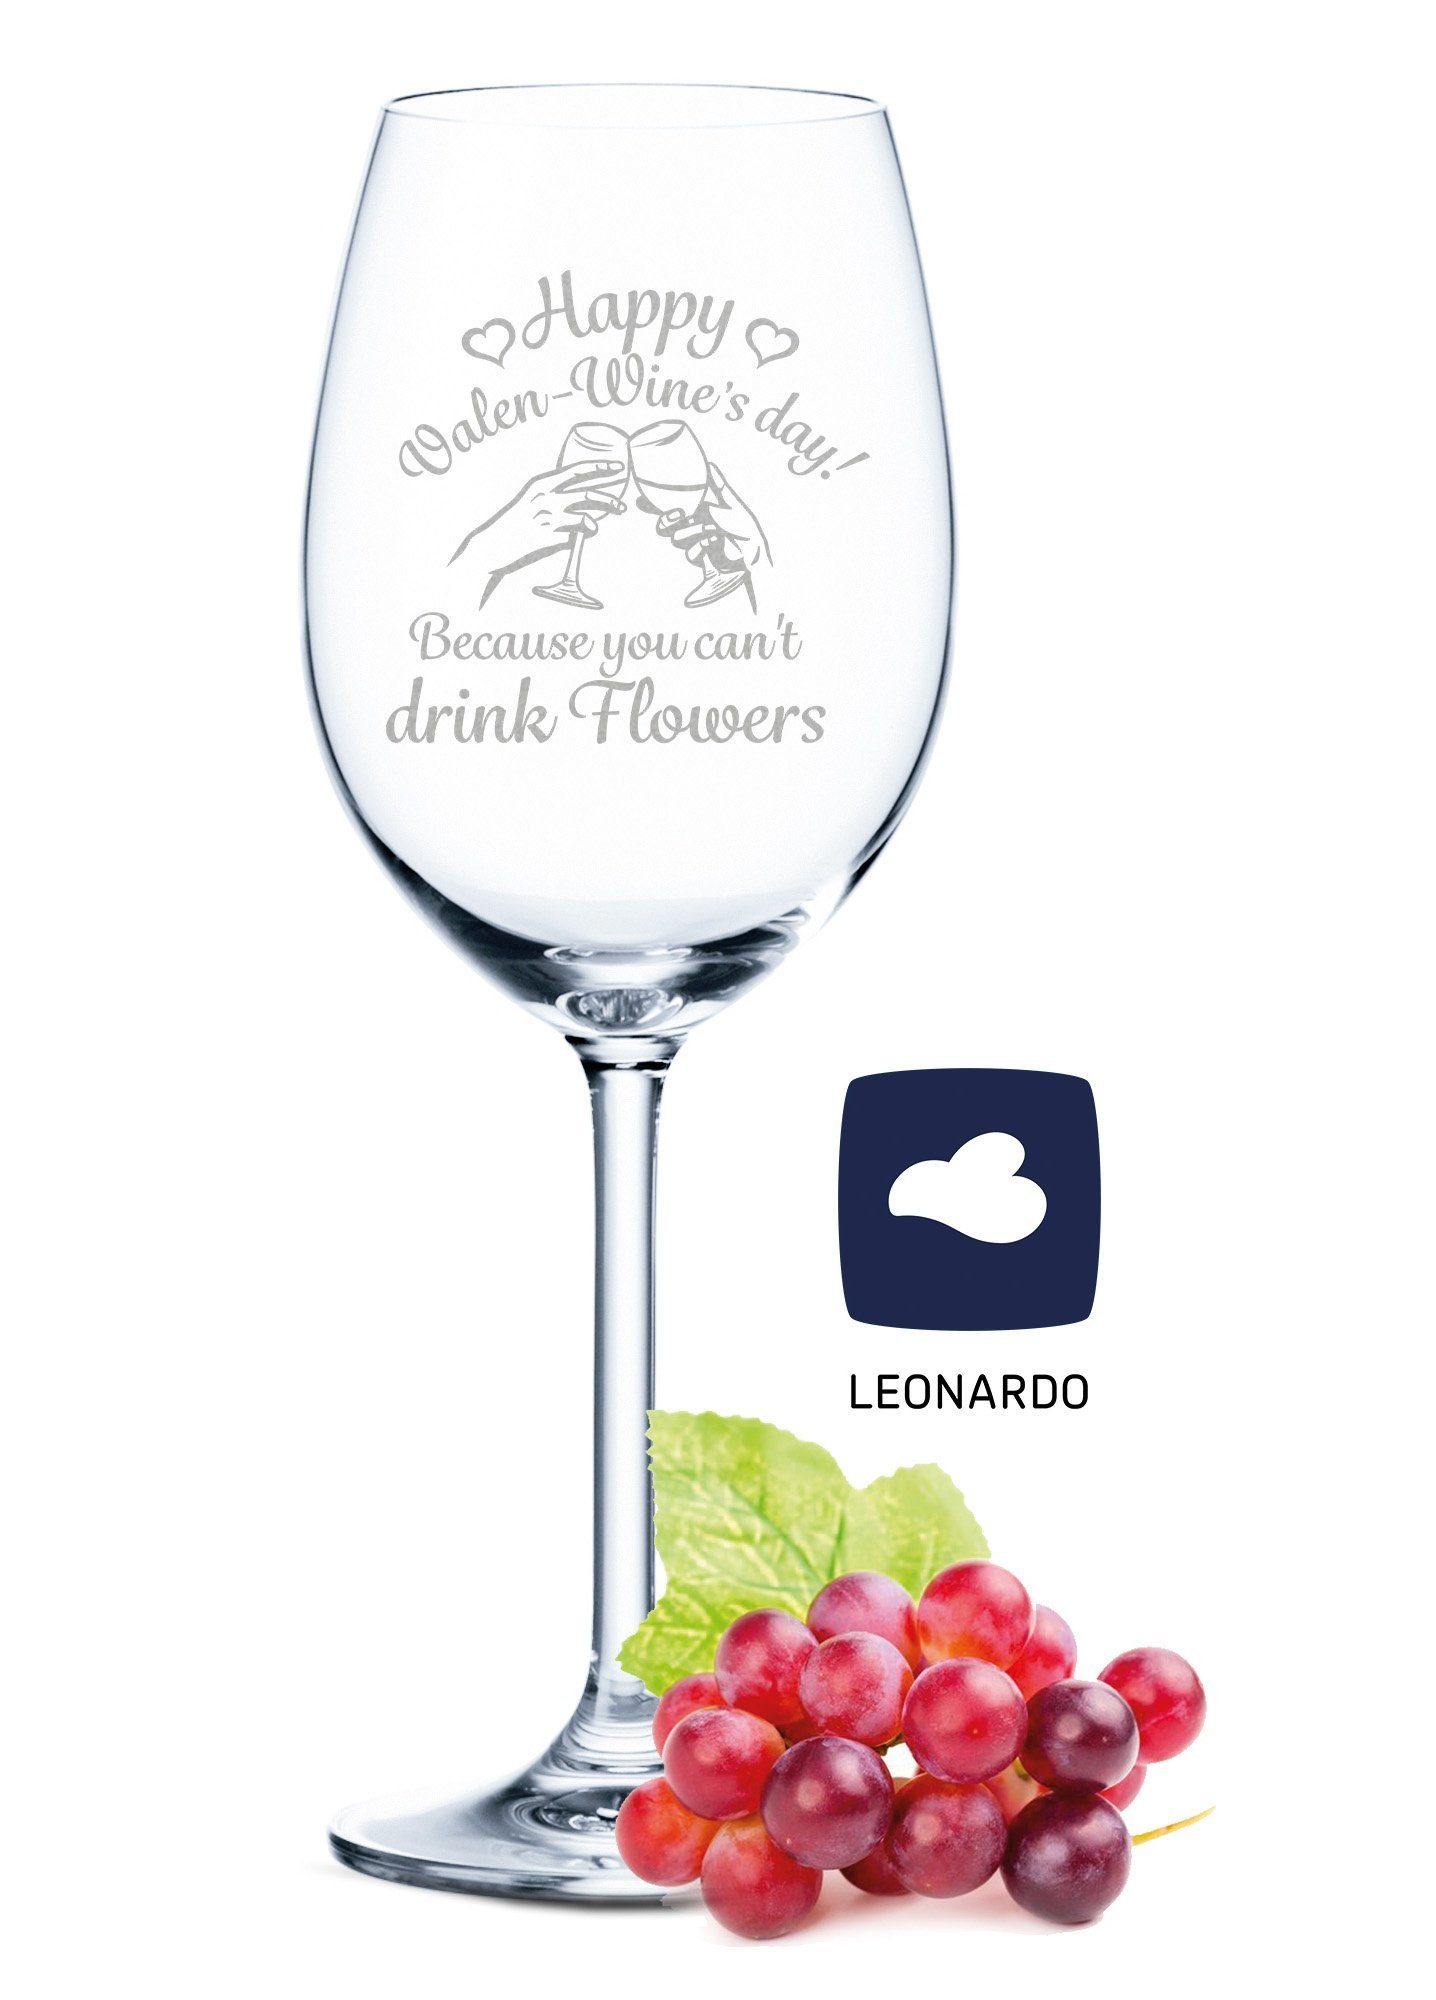 GRAVURZEILE Rotweinglas Leonardo Weinglas mit Gravur - Happy Valen-Wine's day, Glas, graviertes Geschenk für Partner zum Valentinstag